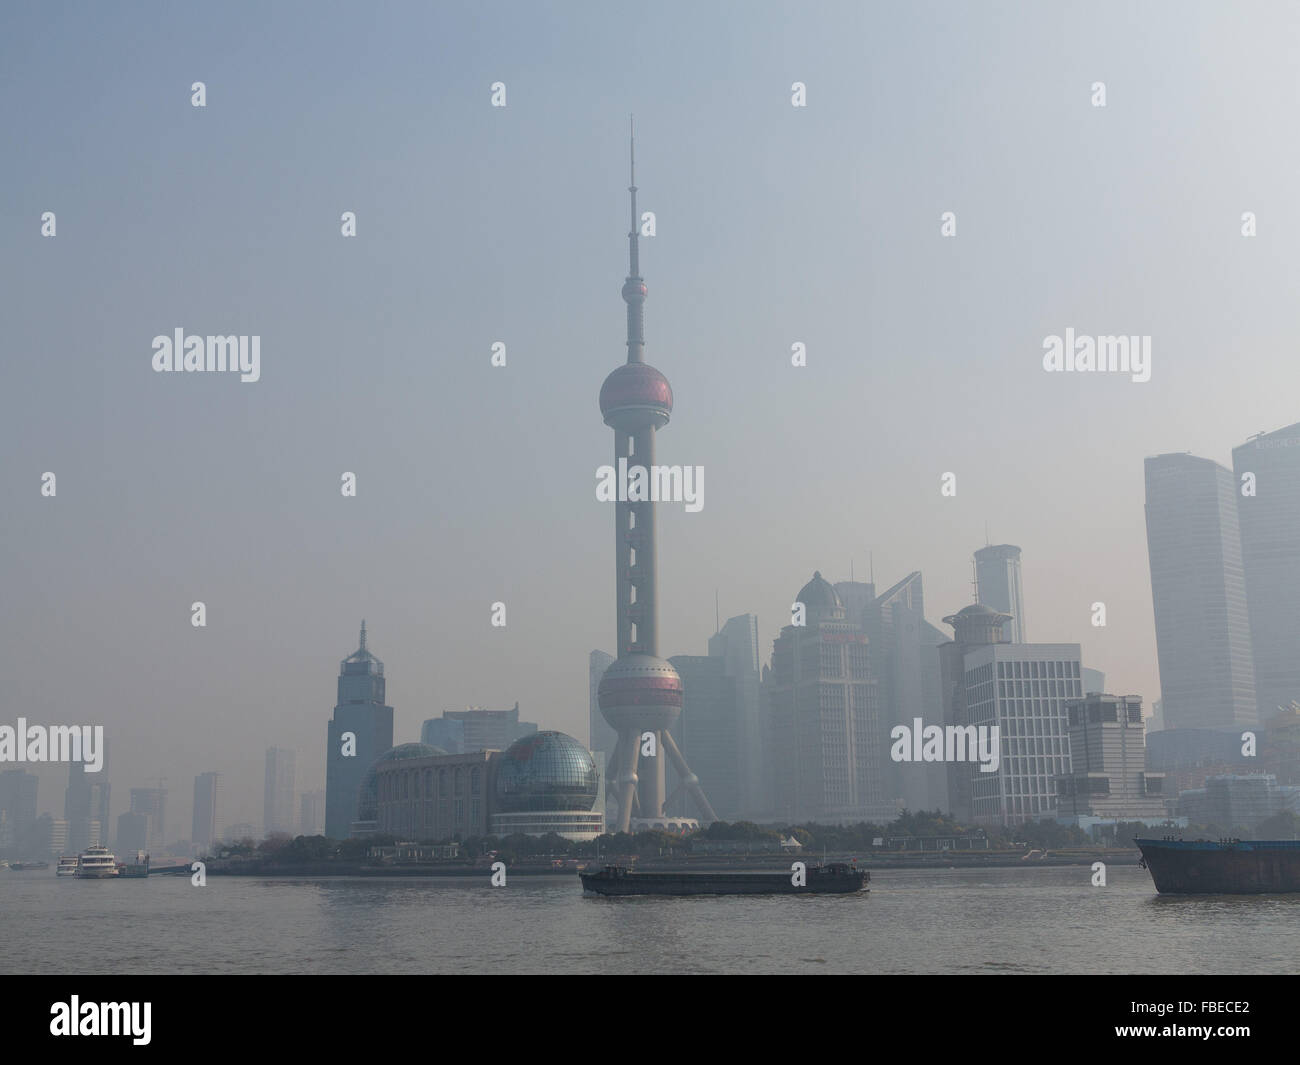 15 Januar 16 Trifft Shanghai China Smog Und Luftverschmutzung Shanghai China Die Pm 2 5 Luftqualitatsindex Ist 227 C Sipa Asien Zuma Draht Alamy Live Nachrichten Stockfotografie Alamy